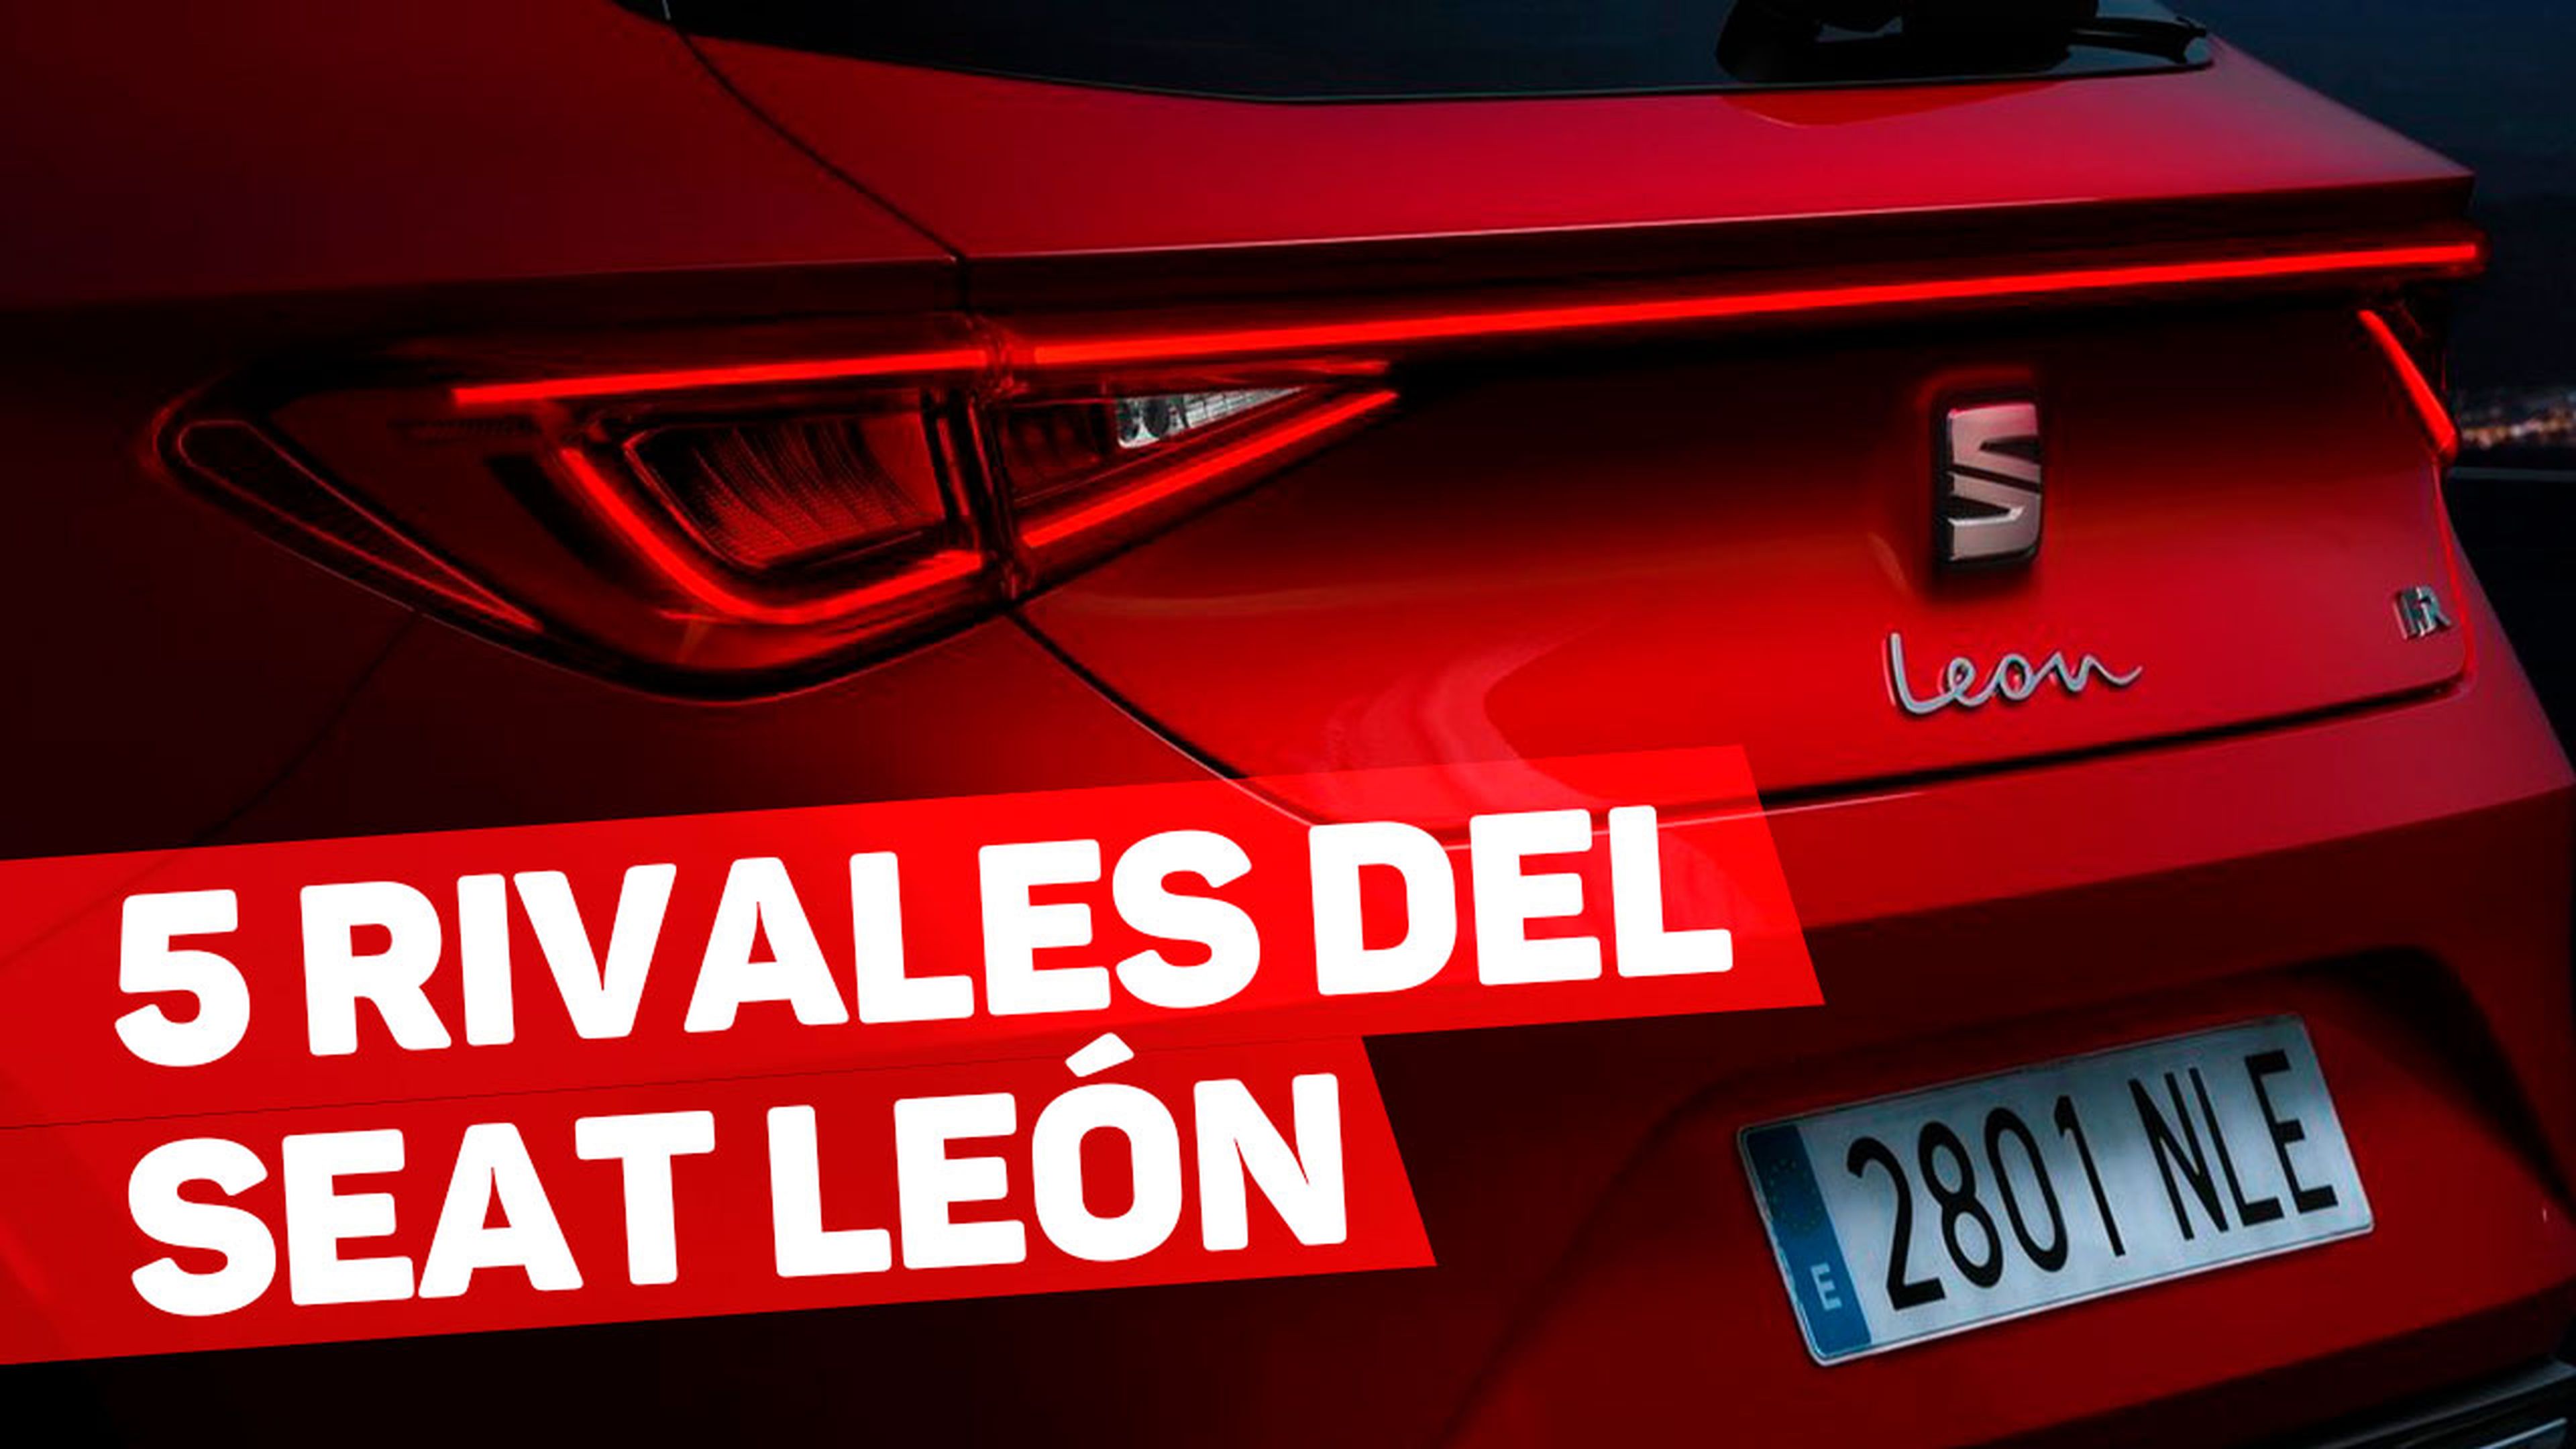 VÍDEO: estos son los 5 rivales más fuertes del Seat León 2020